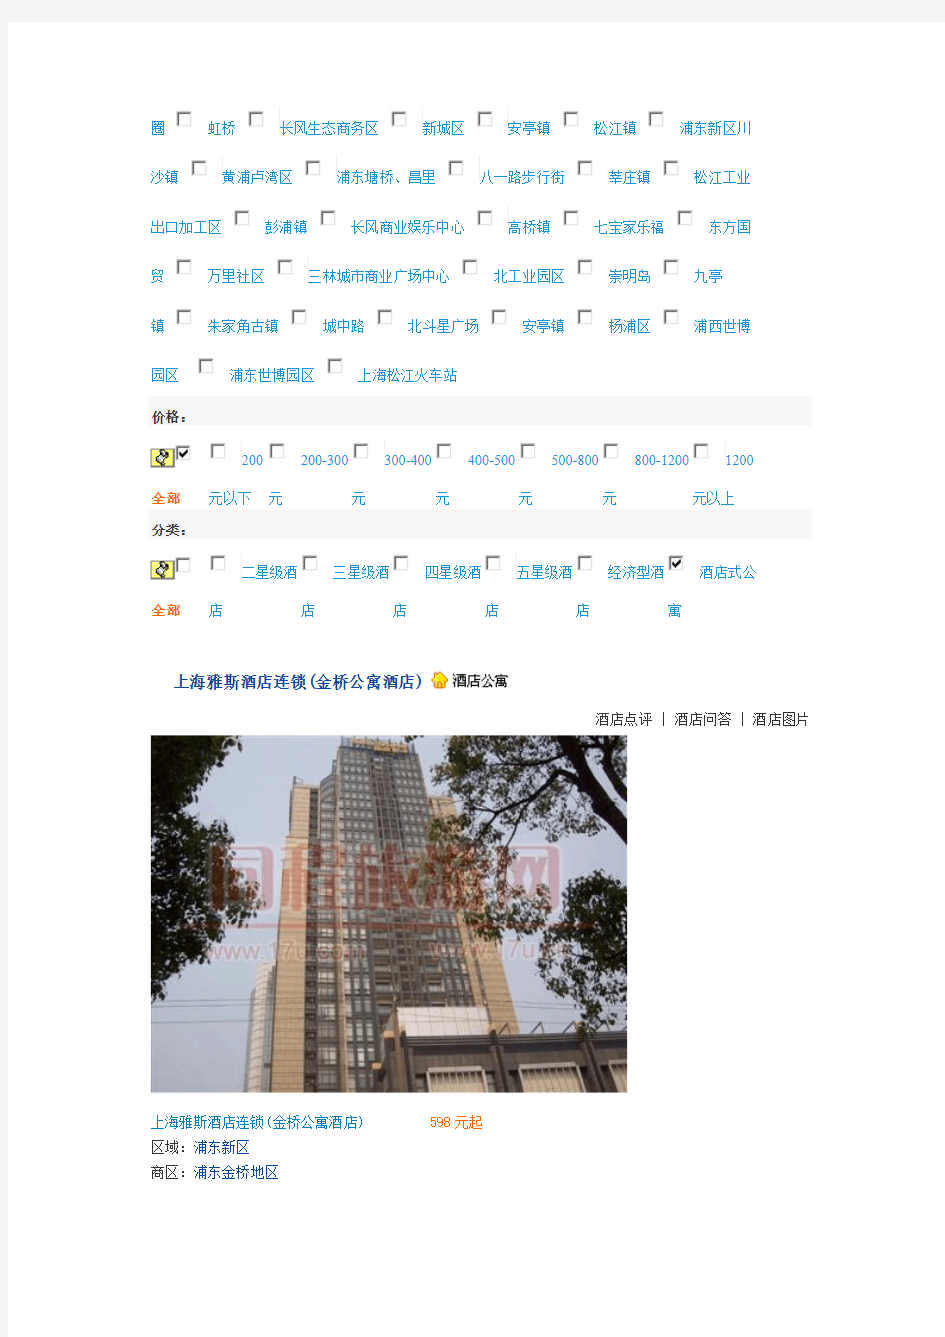 上海酒店式公寓名单